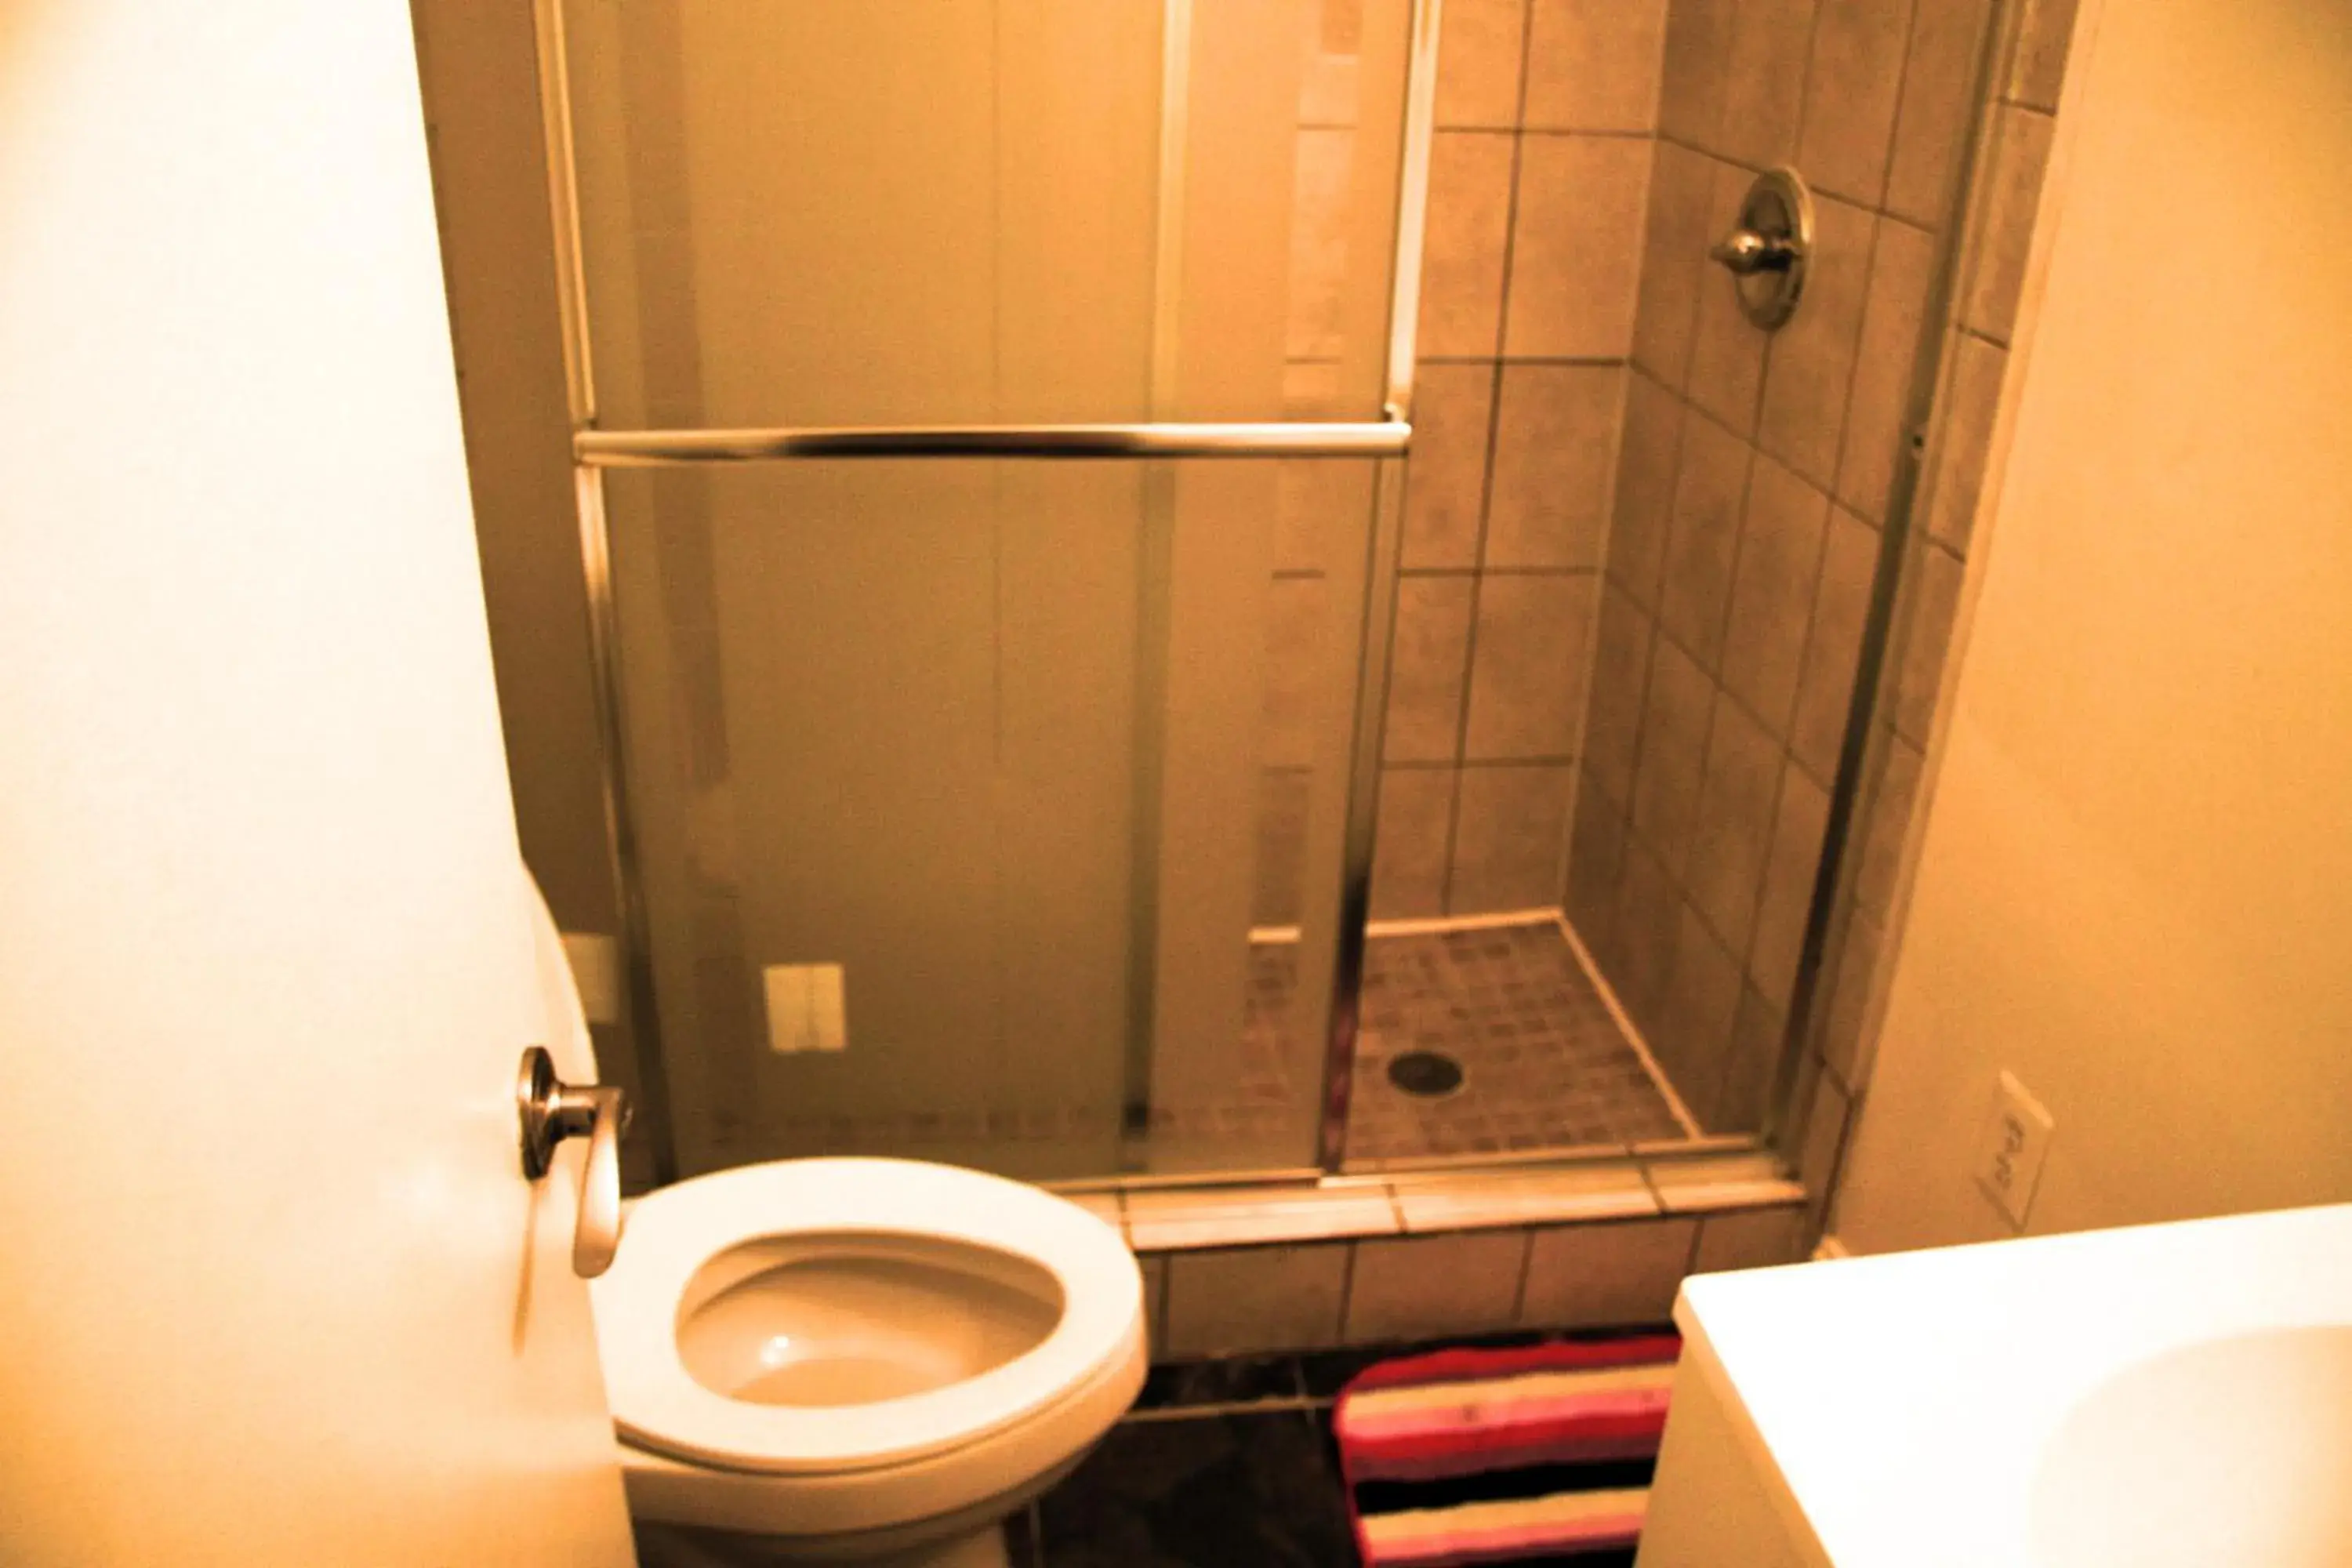 Bathroom in Duo Housing